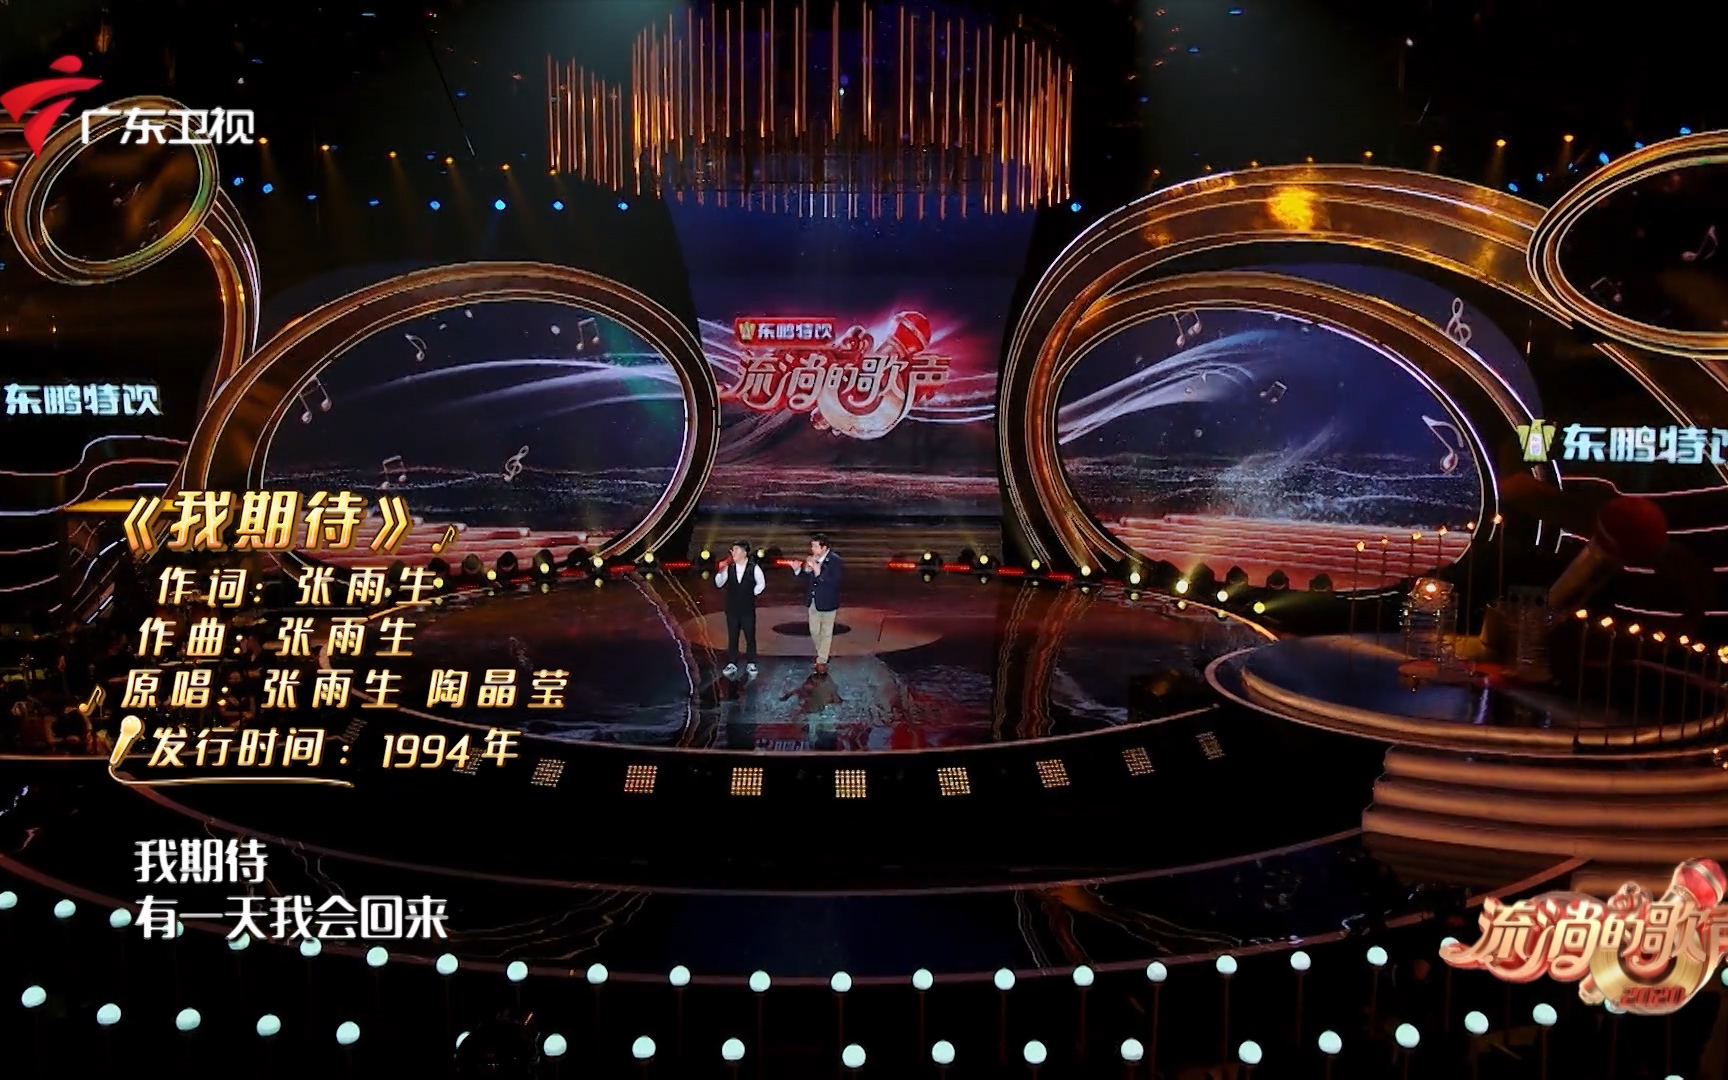 【《流淌的歌声》第二季第十期精彩片段】金志文即兴演唱《我期待》！这个高音太可了！